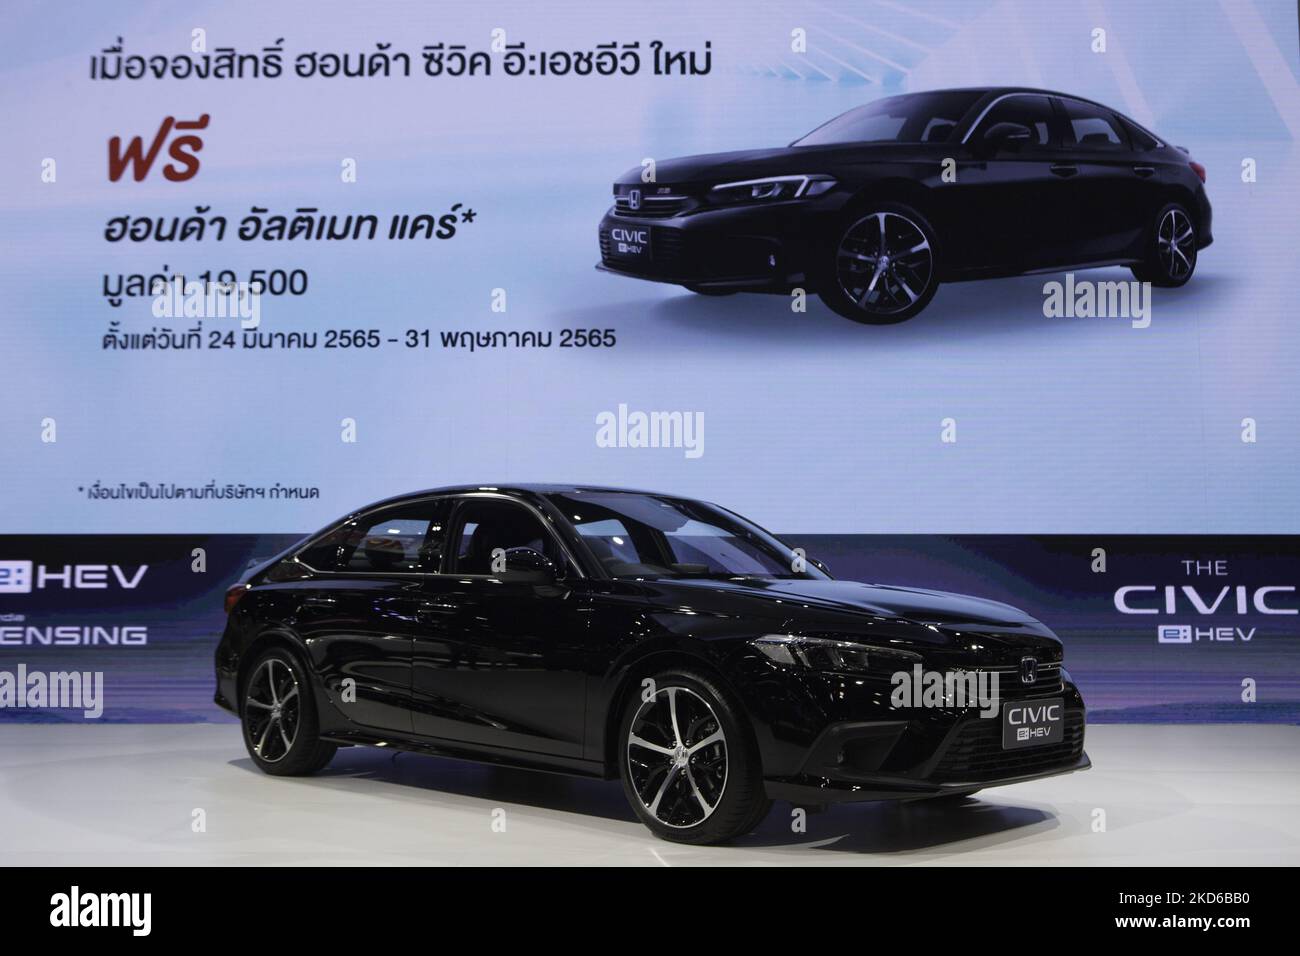 Honda ha presentato il veicolo elettrico ibrido Honda Civic e:HEV al Salone dell'automobile di Bangkok 2022. (Foto di Atiwat Siltamethanont/NurPhoto) Foto Stock